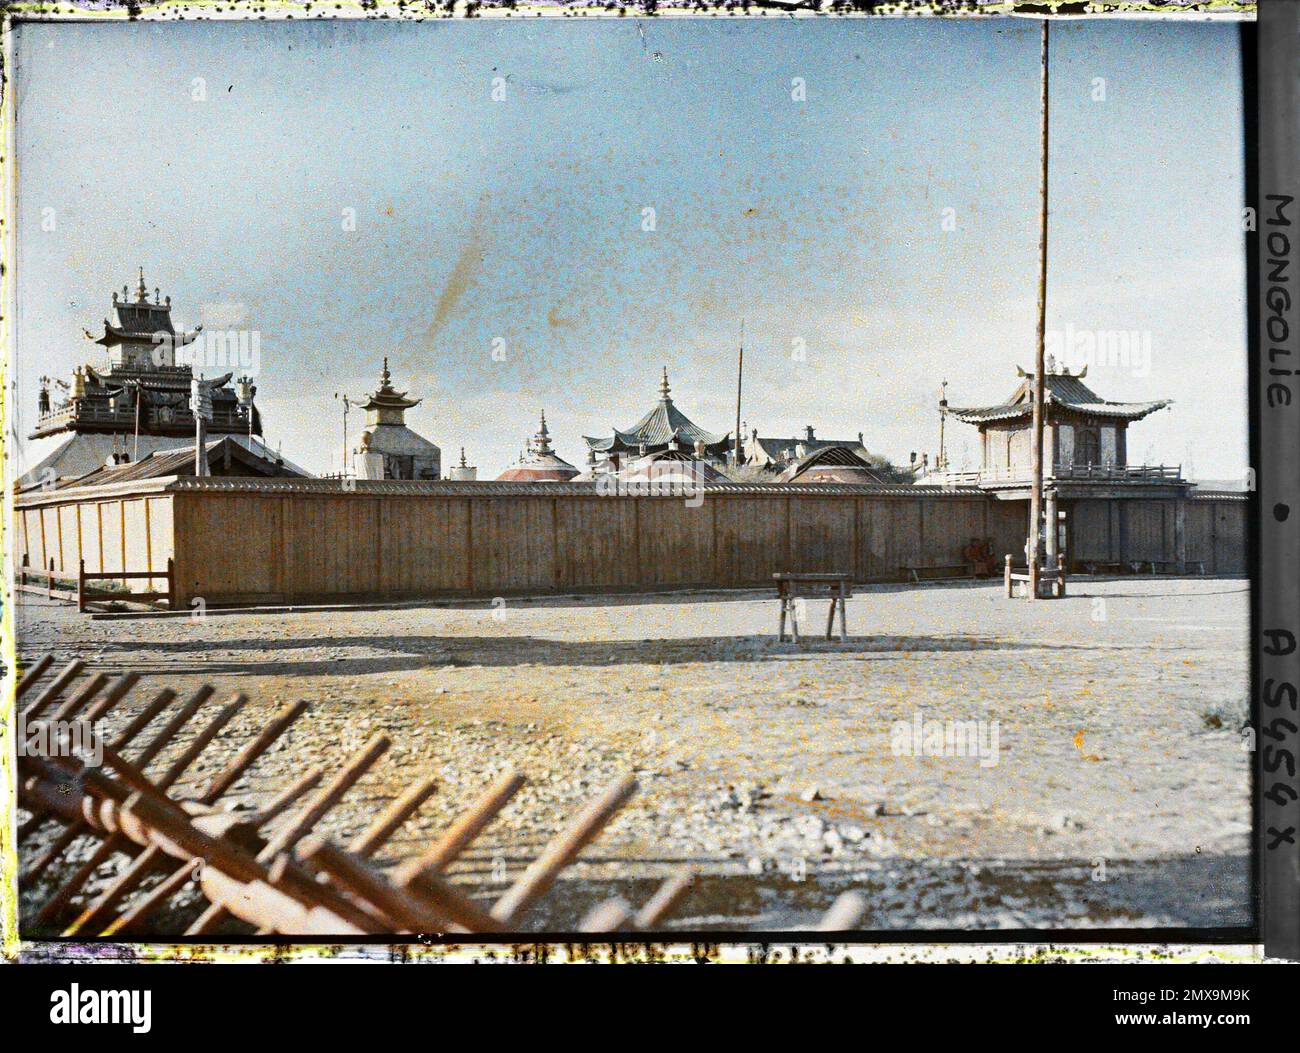 Orga, Mongolie l'entrée sud de Shar or (Palais jaune) , 1913 - Mongolie -  Stéphane Passet - (6-25 juillet) (Français - Orga , Mongolie l'entrée sud  du Shar or ( Palais jaune )).